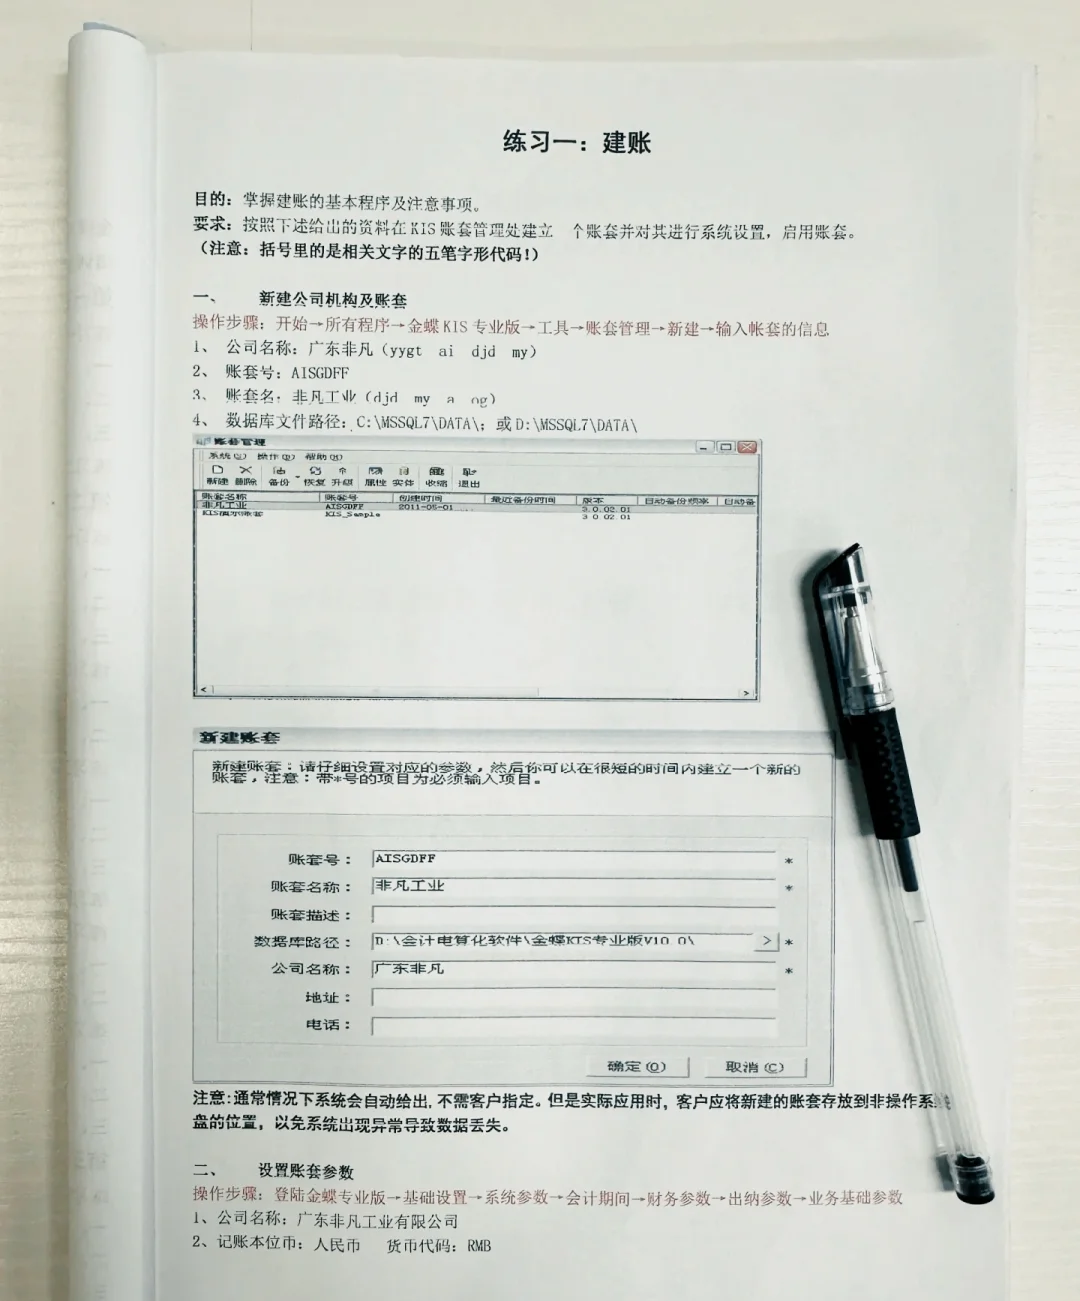 金蝶财务软件操作流程手册大全(完整版)